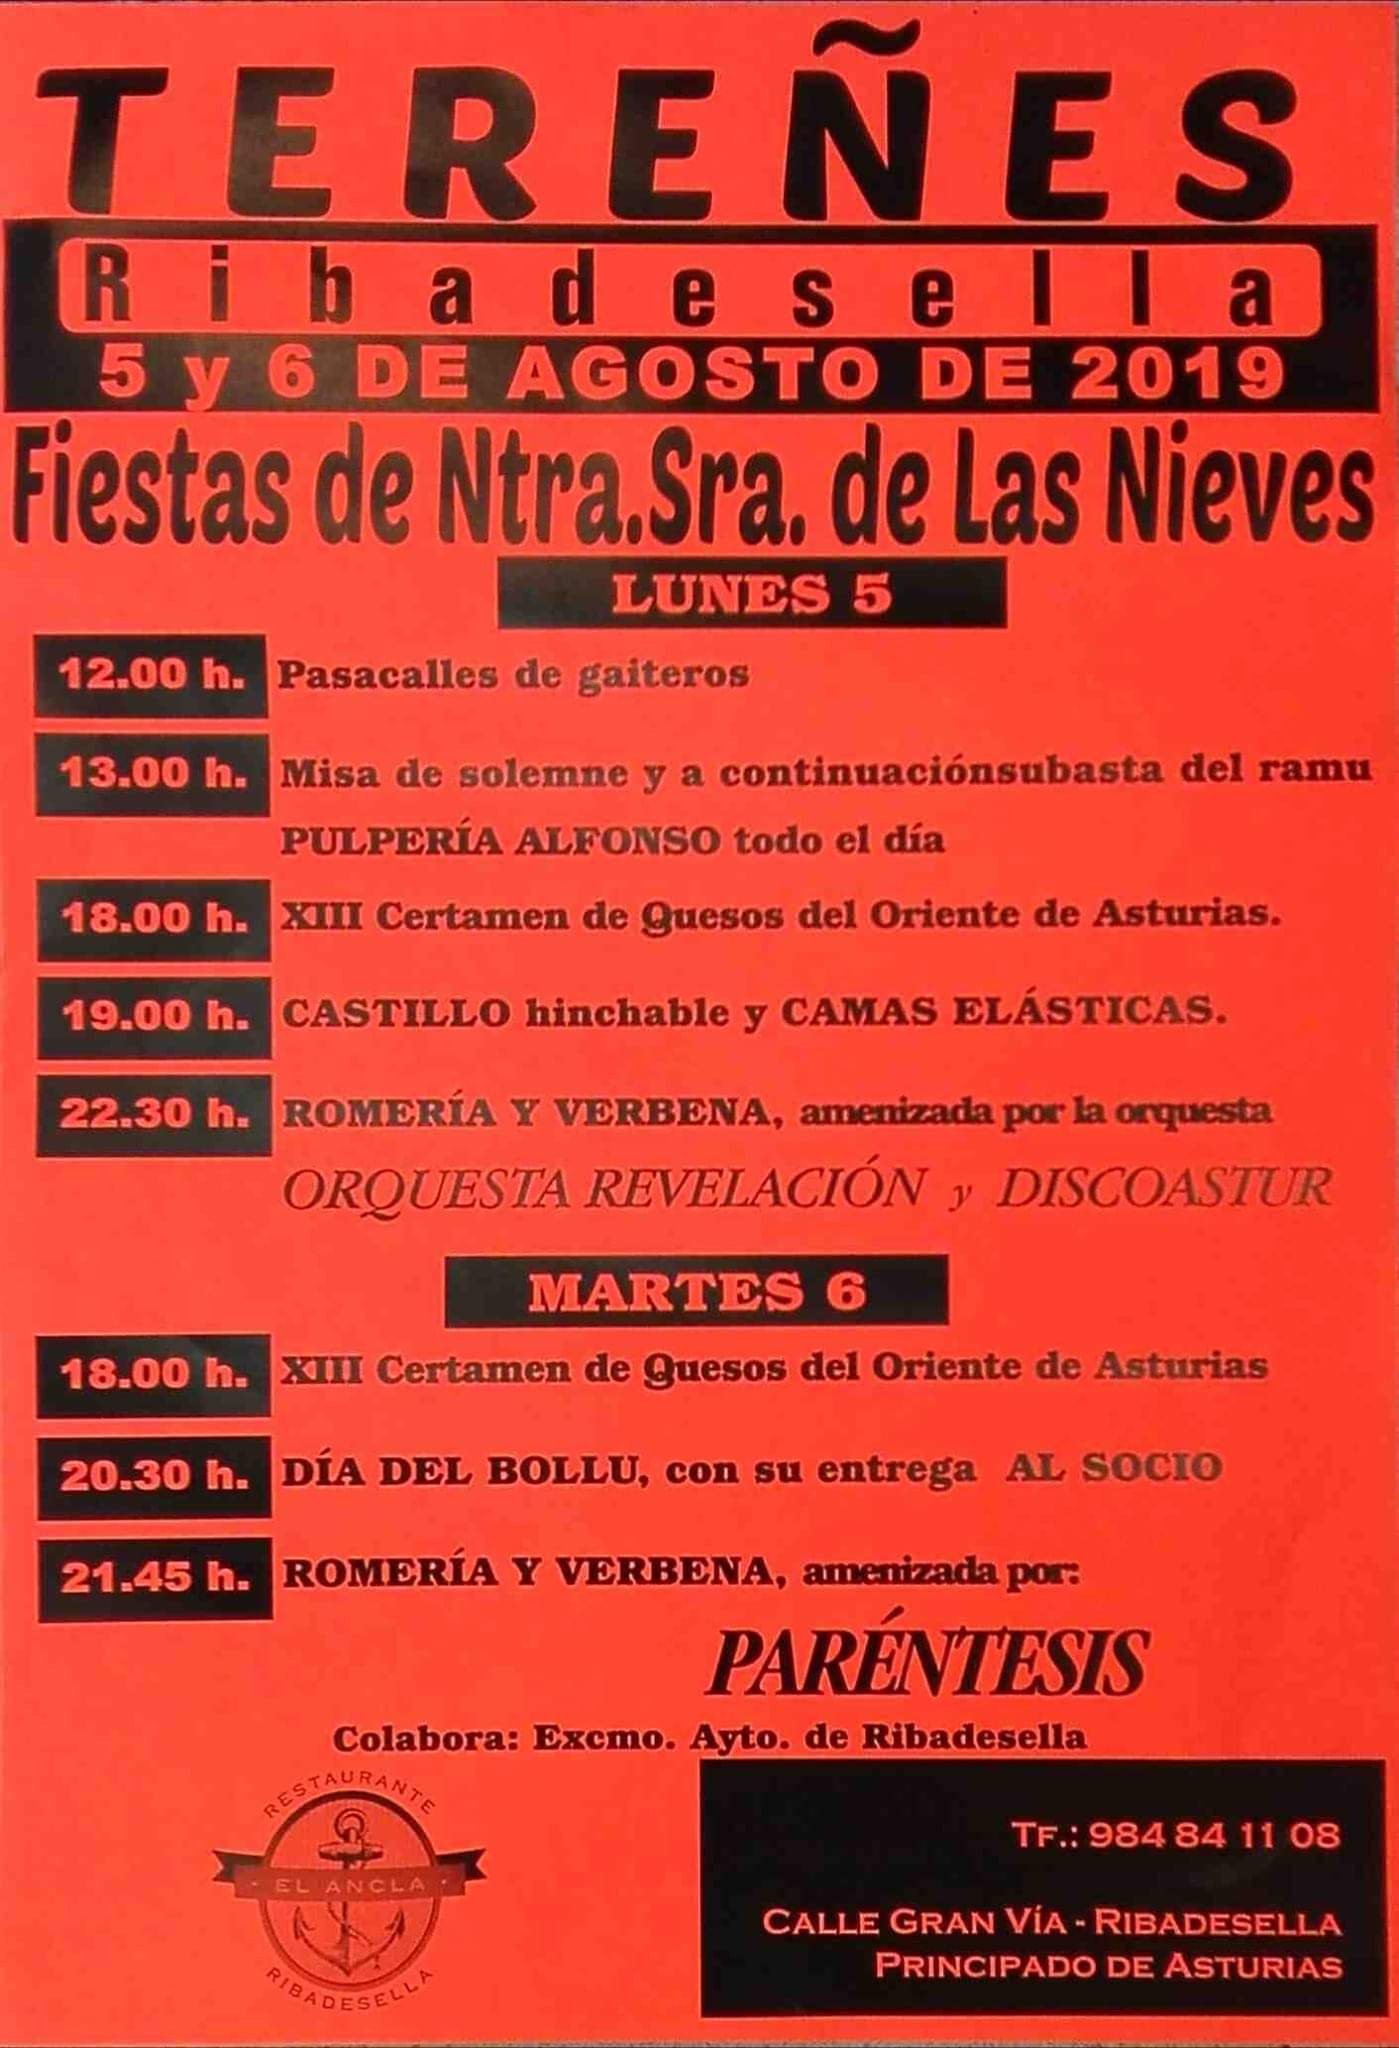 Fiestas de Nuestra Señora de Las Nieves 2019 - Tereñes (Asturias)